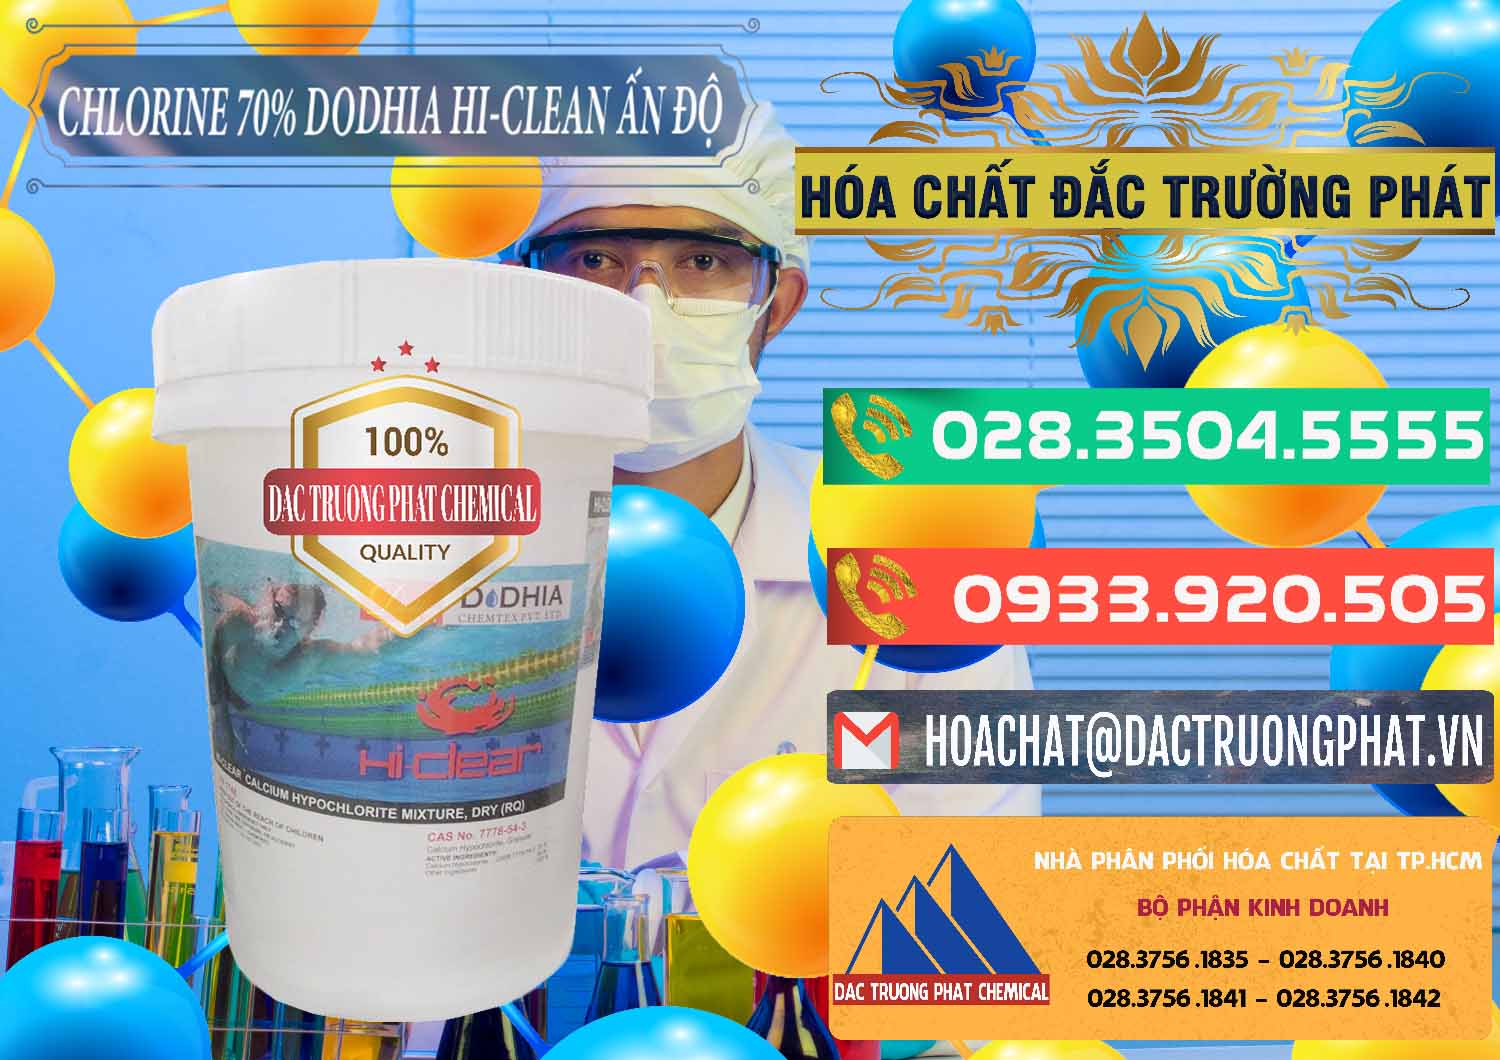 Công ty chuyên bán & cung cấp Chlorine – Clorin 70% Dodhia Hi-Clean Ấn Độ India - 0214 - Nơi chuyên kinh doanh & phân phối hóa chất tại TP.HCM - congtyhoachat.com.vn